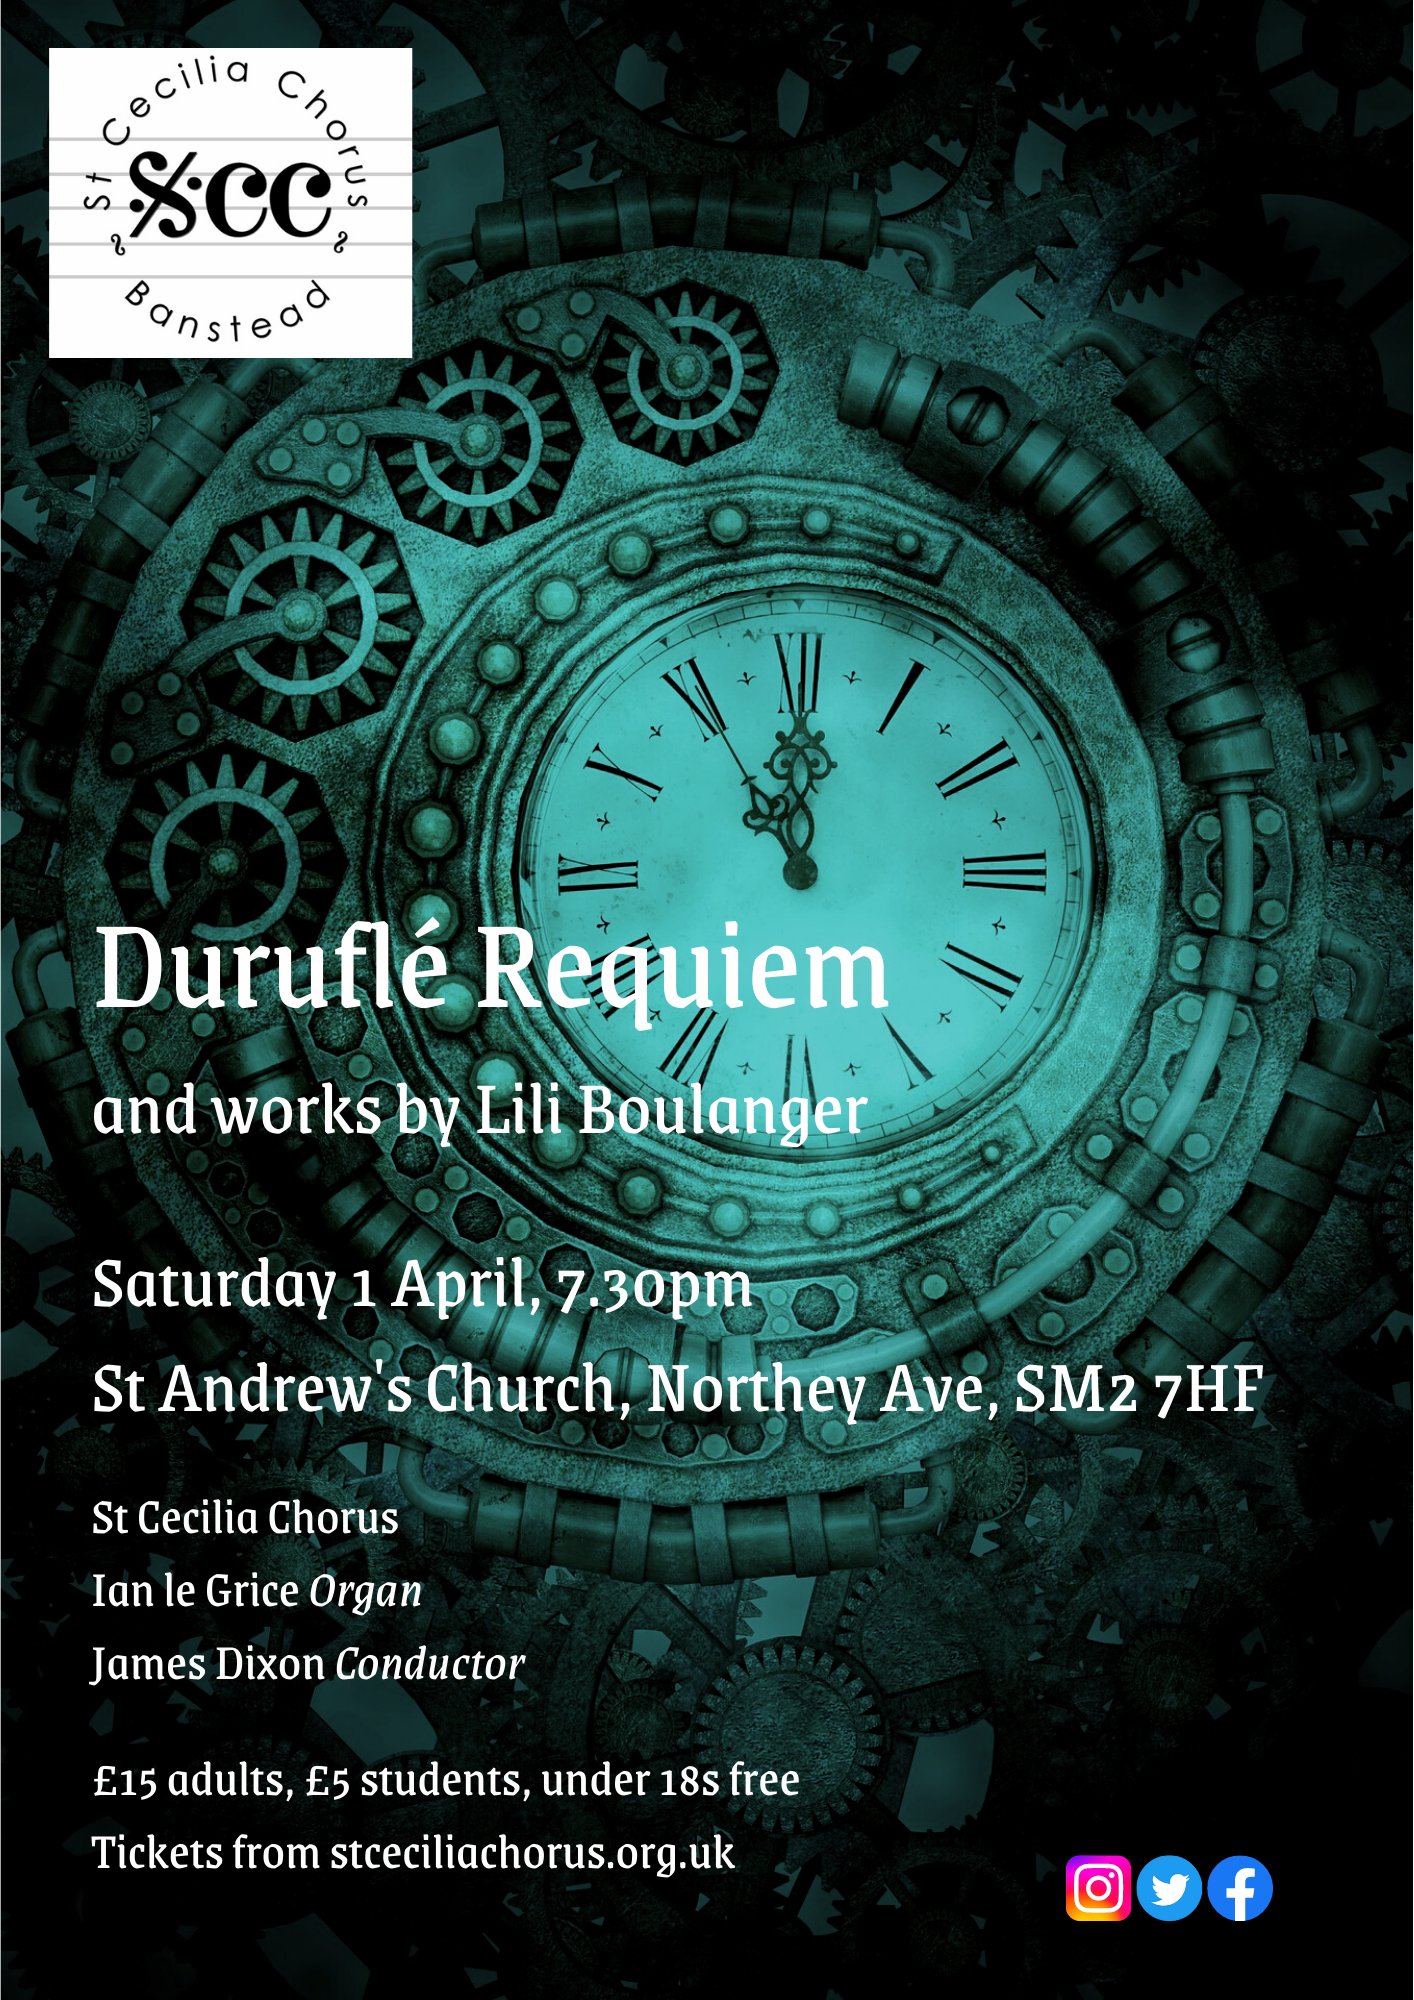 Concert - Durufle Requiem & works by Lili Boulanger